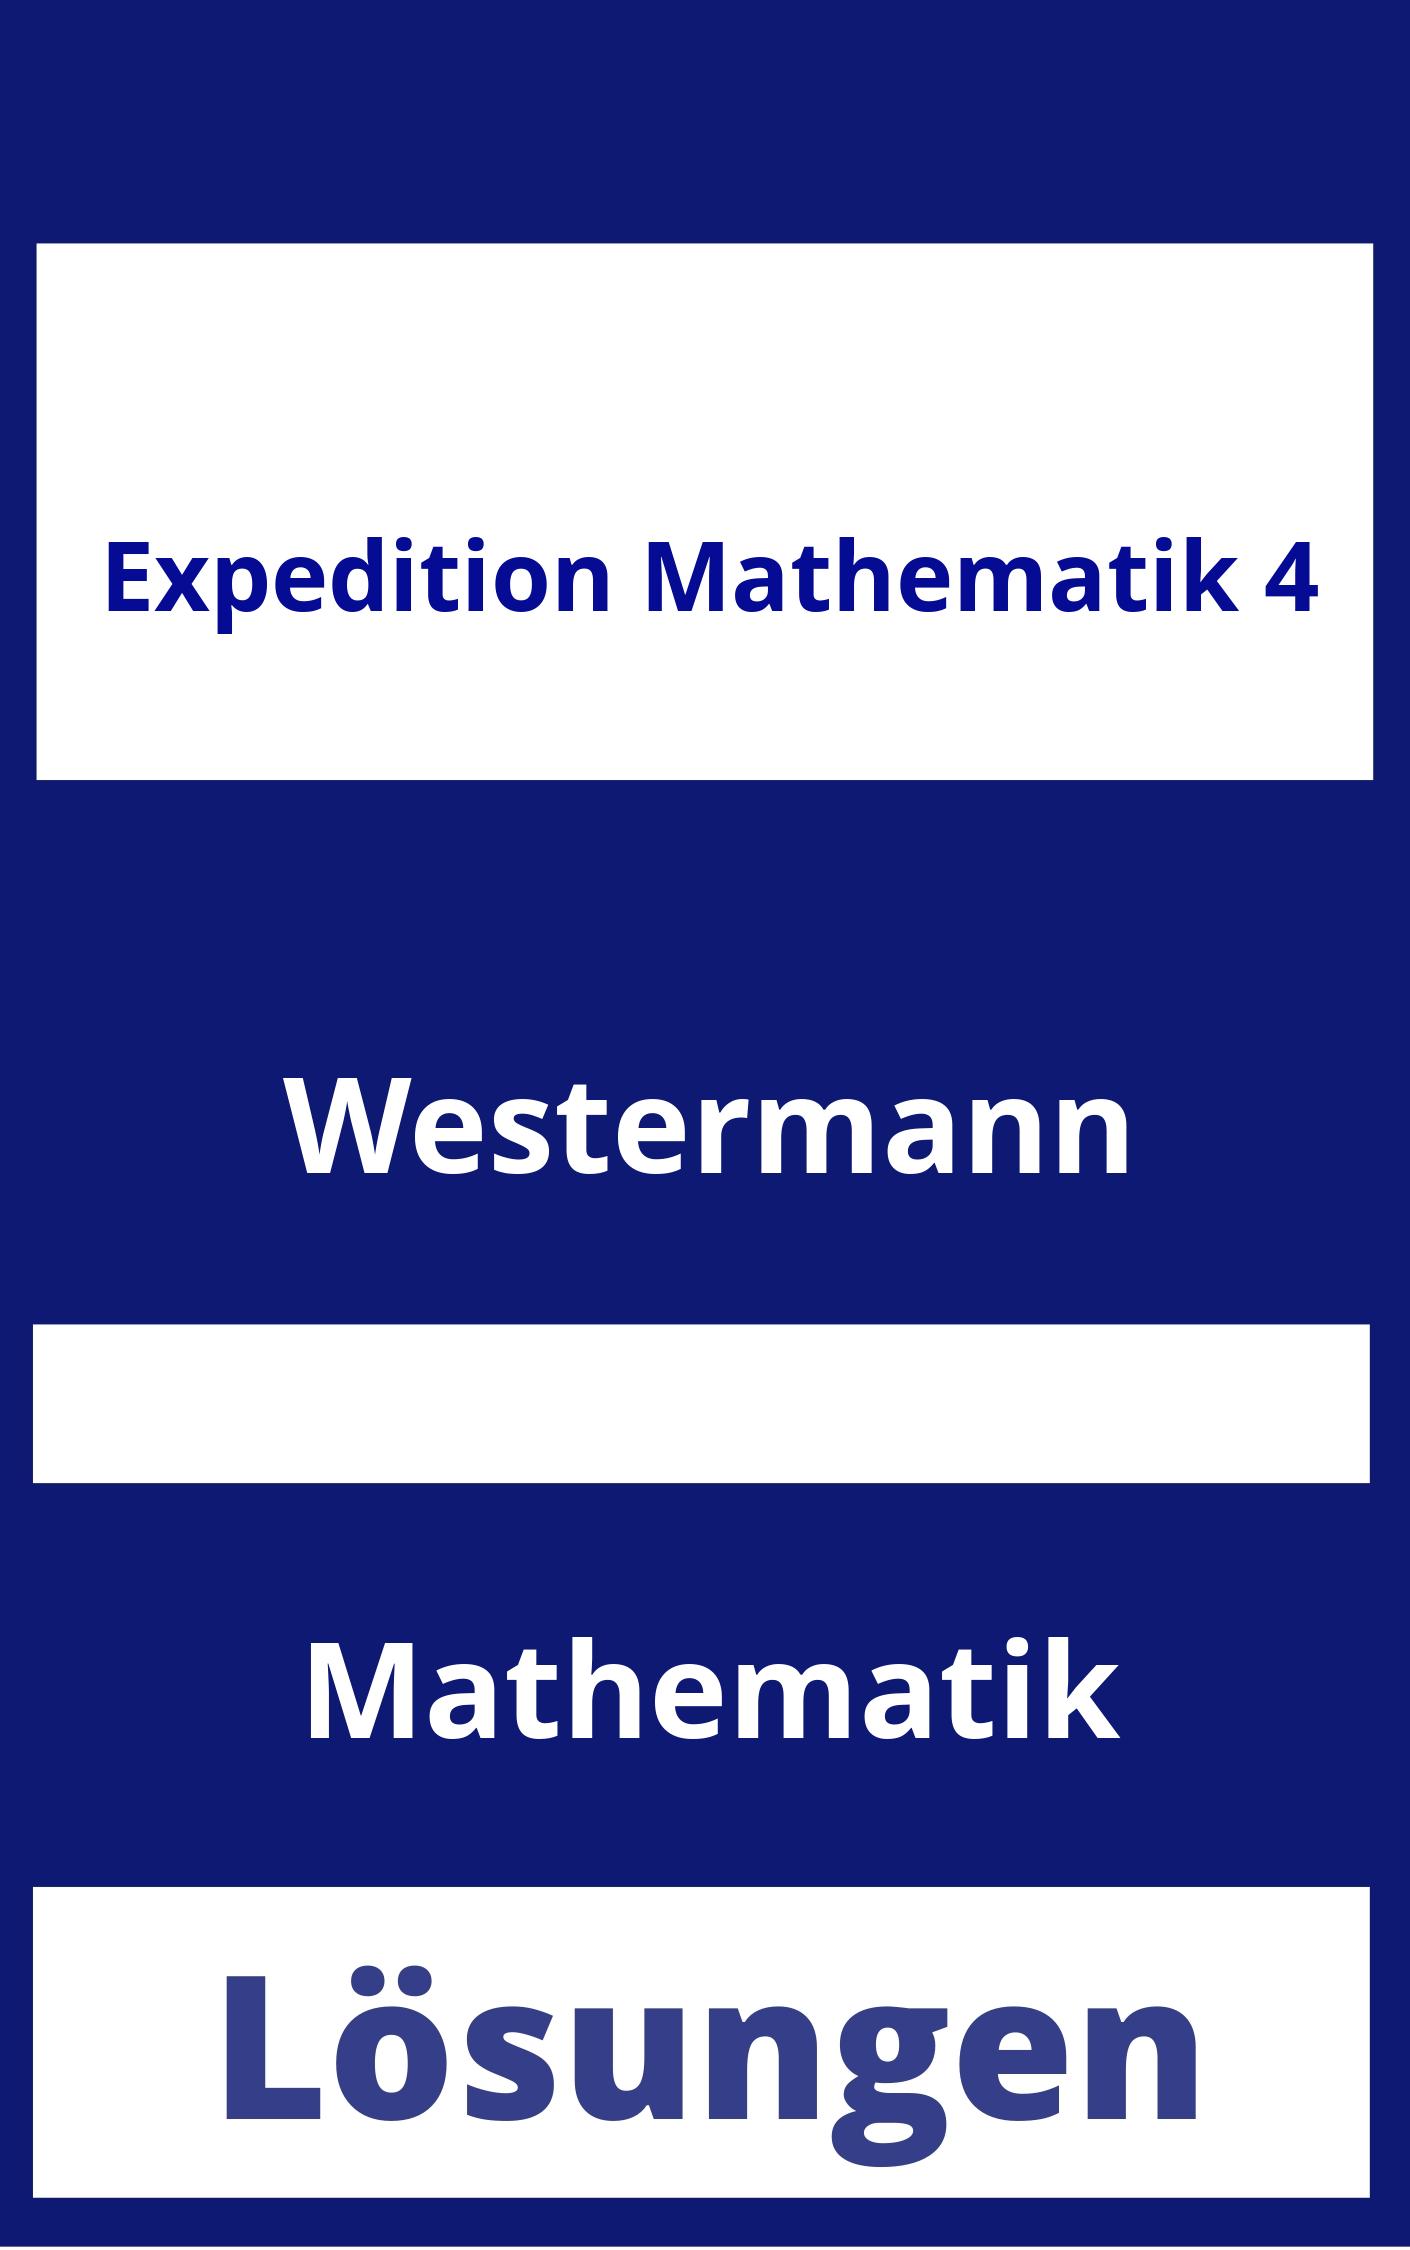 Expedition Mathematik 4 Lösungen PDF